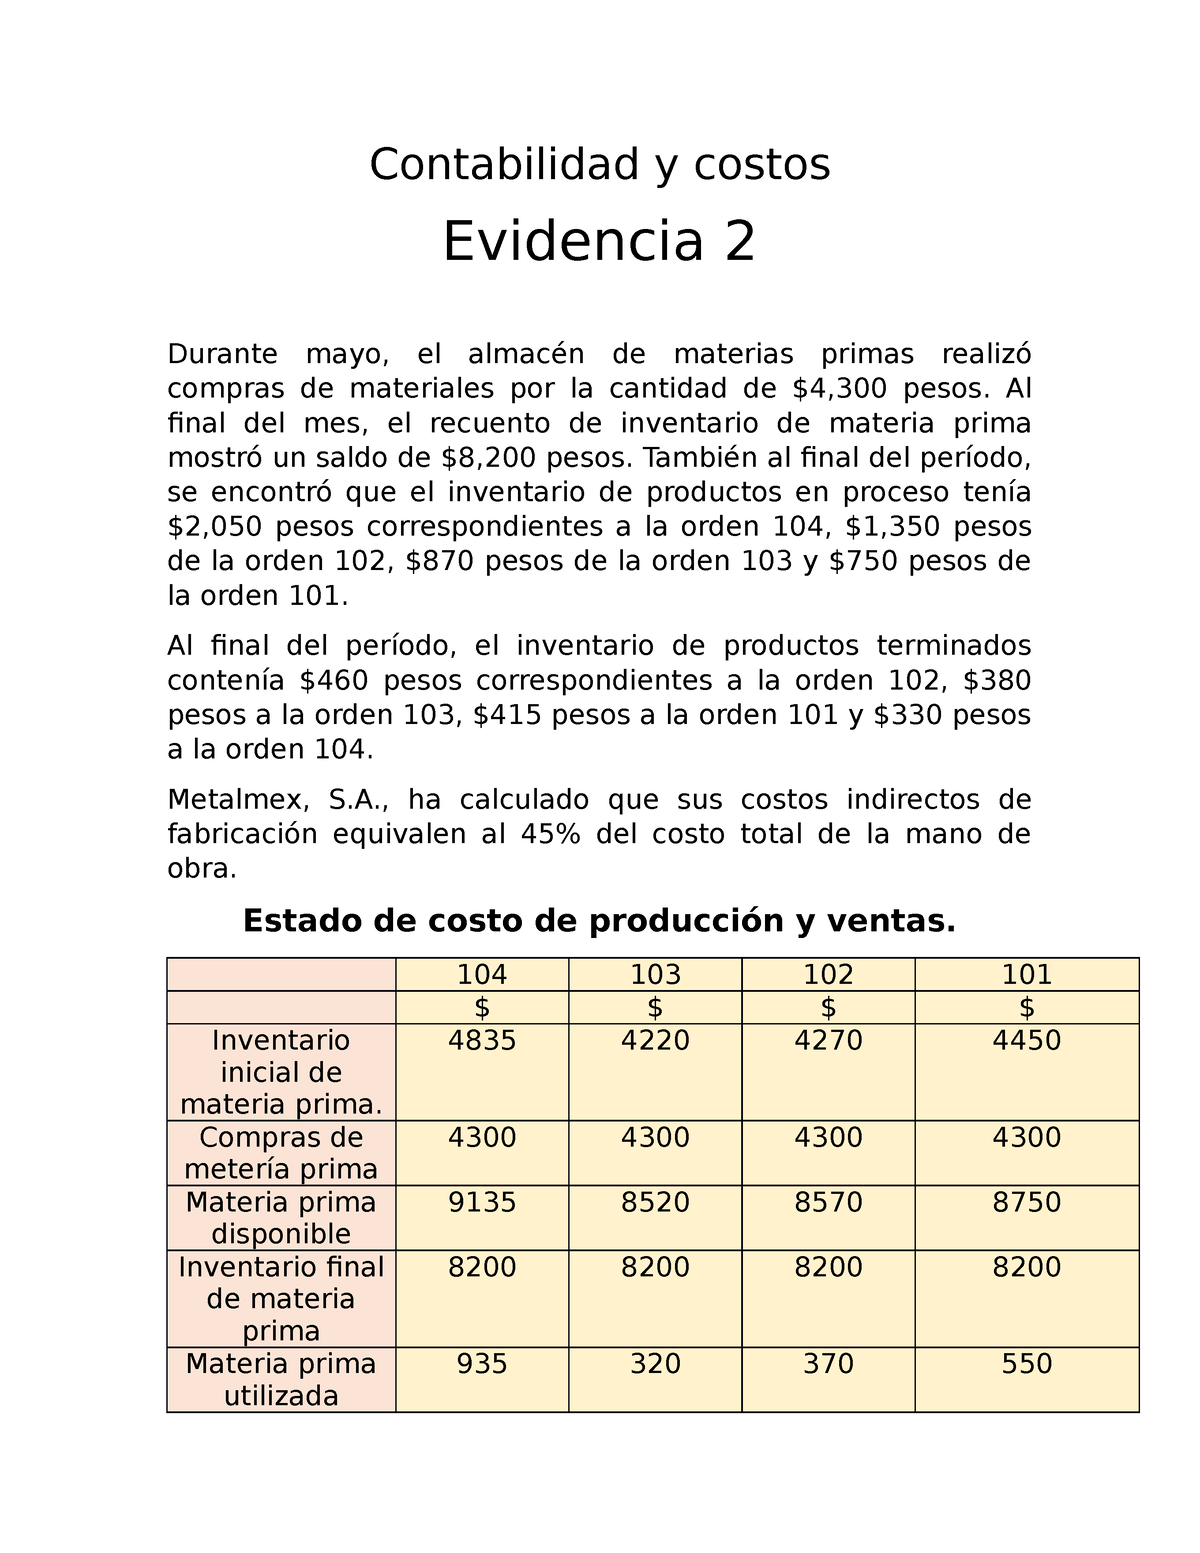 Contabilidad Y Costos Evidencia 2 Tecmilenio Culiacan Contabilidad Y Costos Evidencia 2 3974